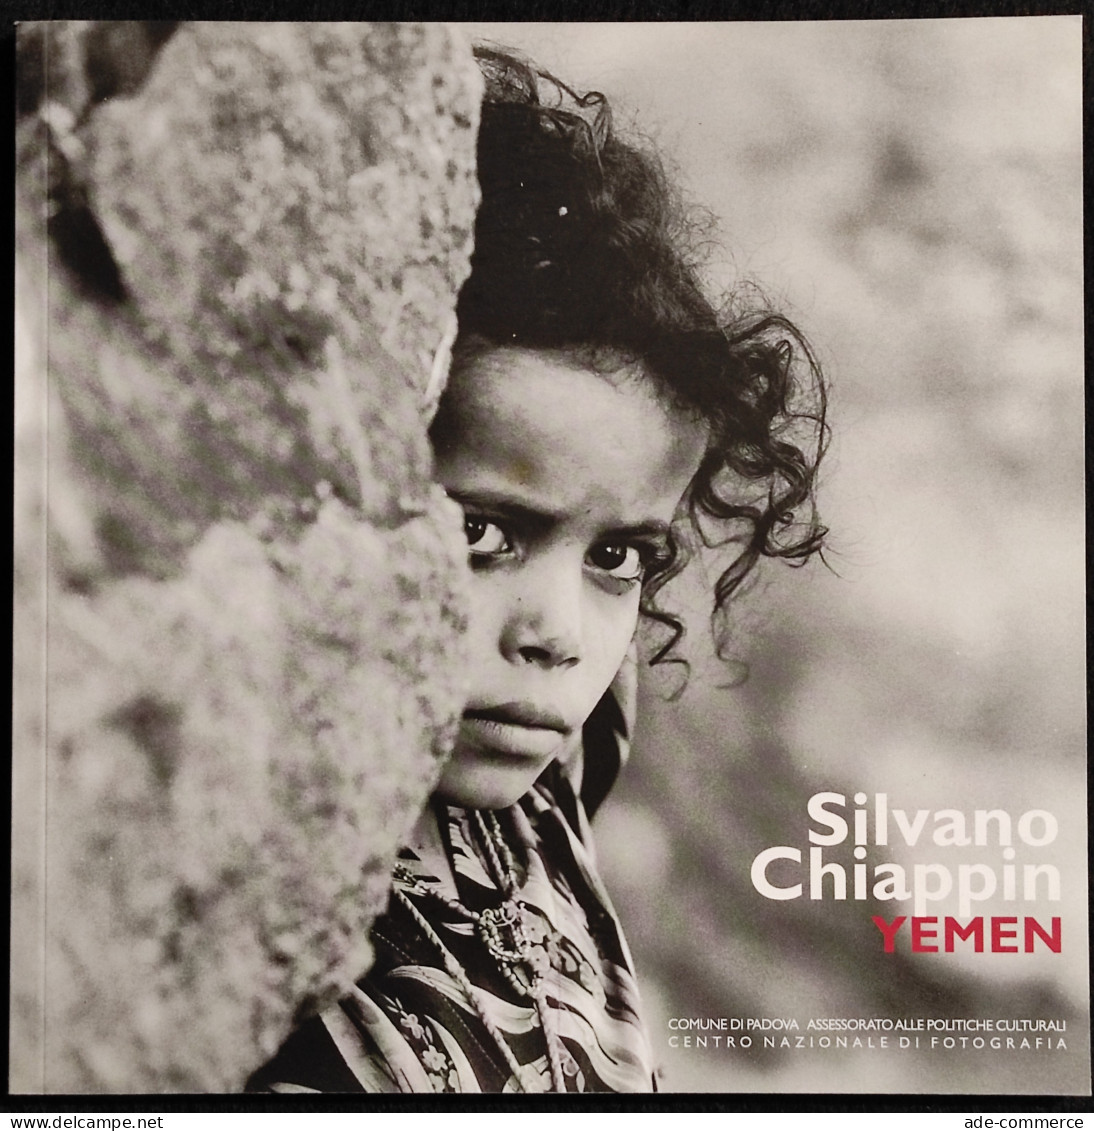 Silvano Chiappin - Yemen - E. Gusella - 2006 - Fotografia - Fotografia